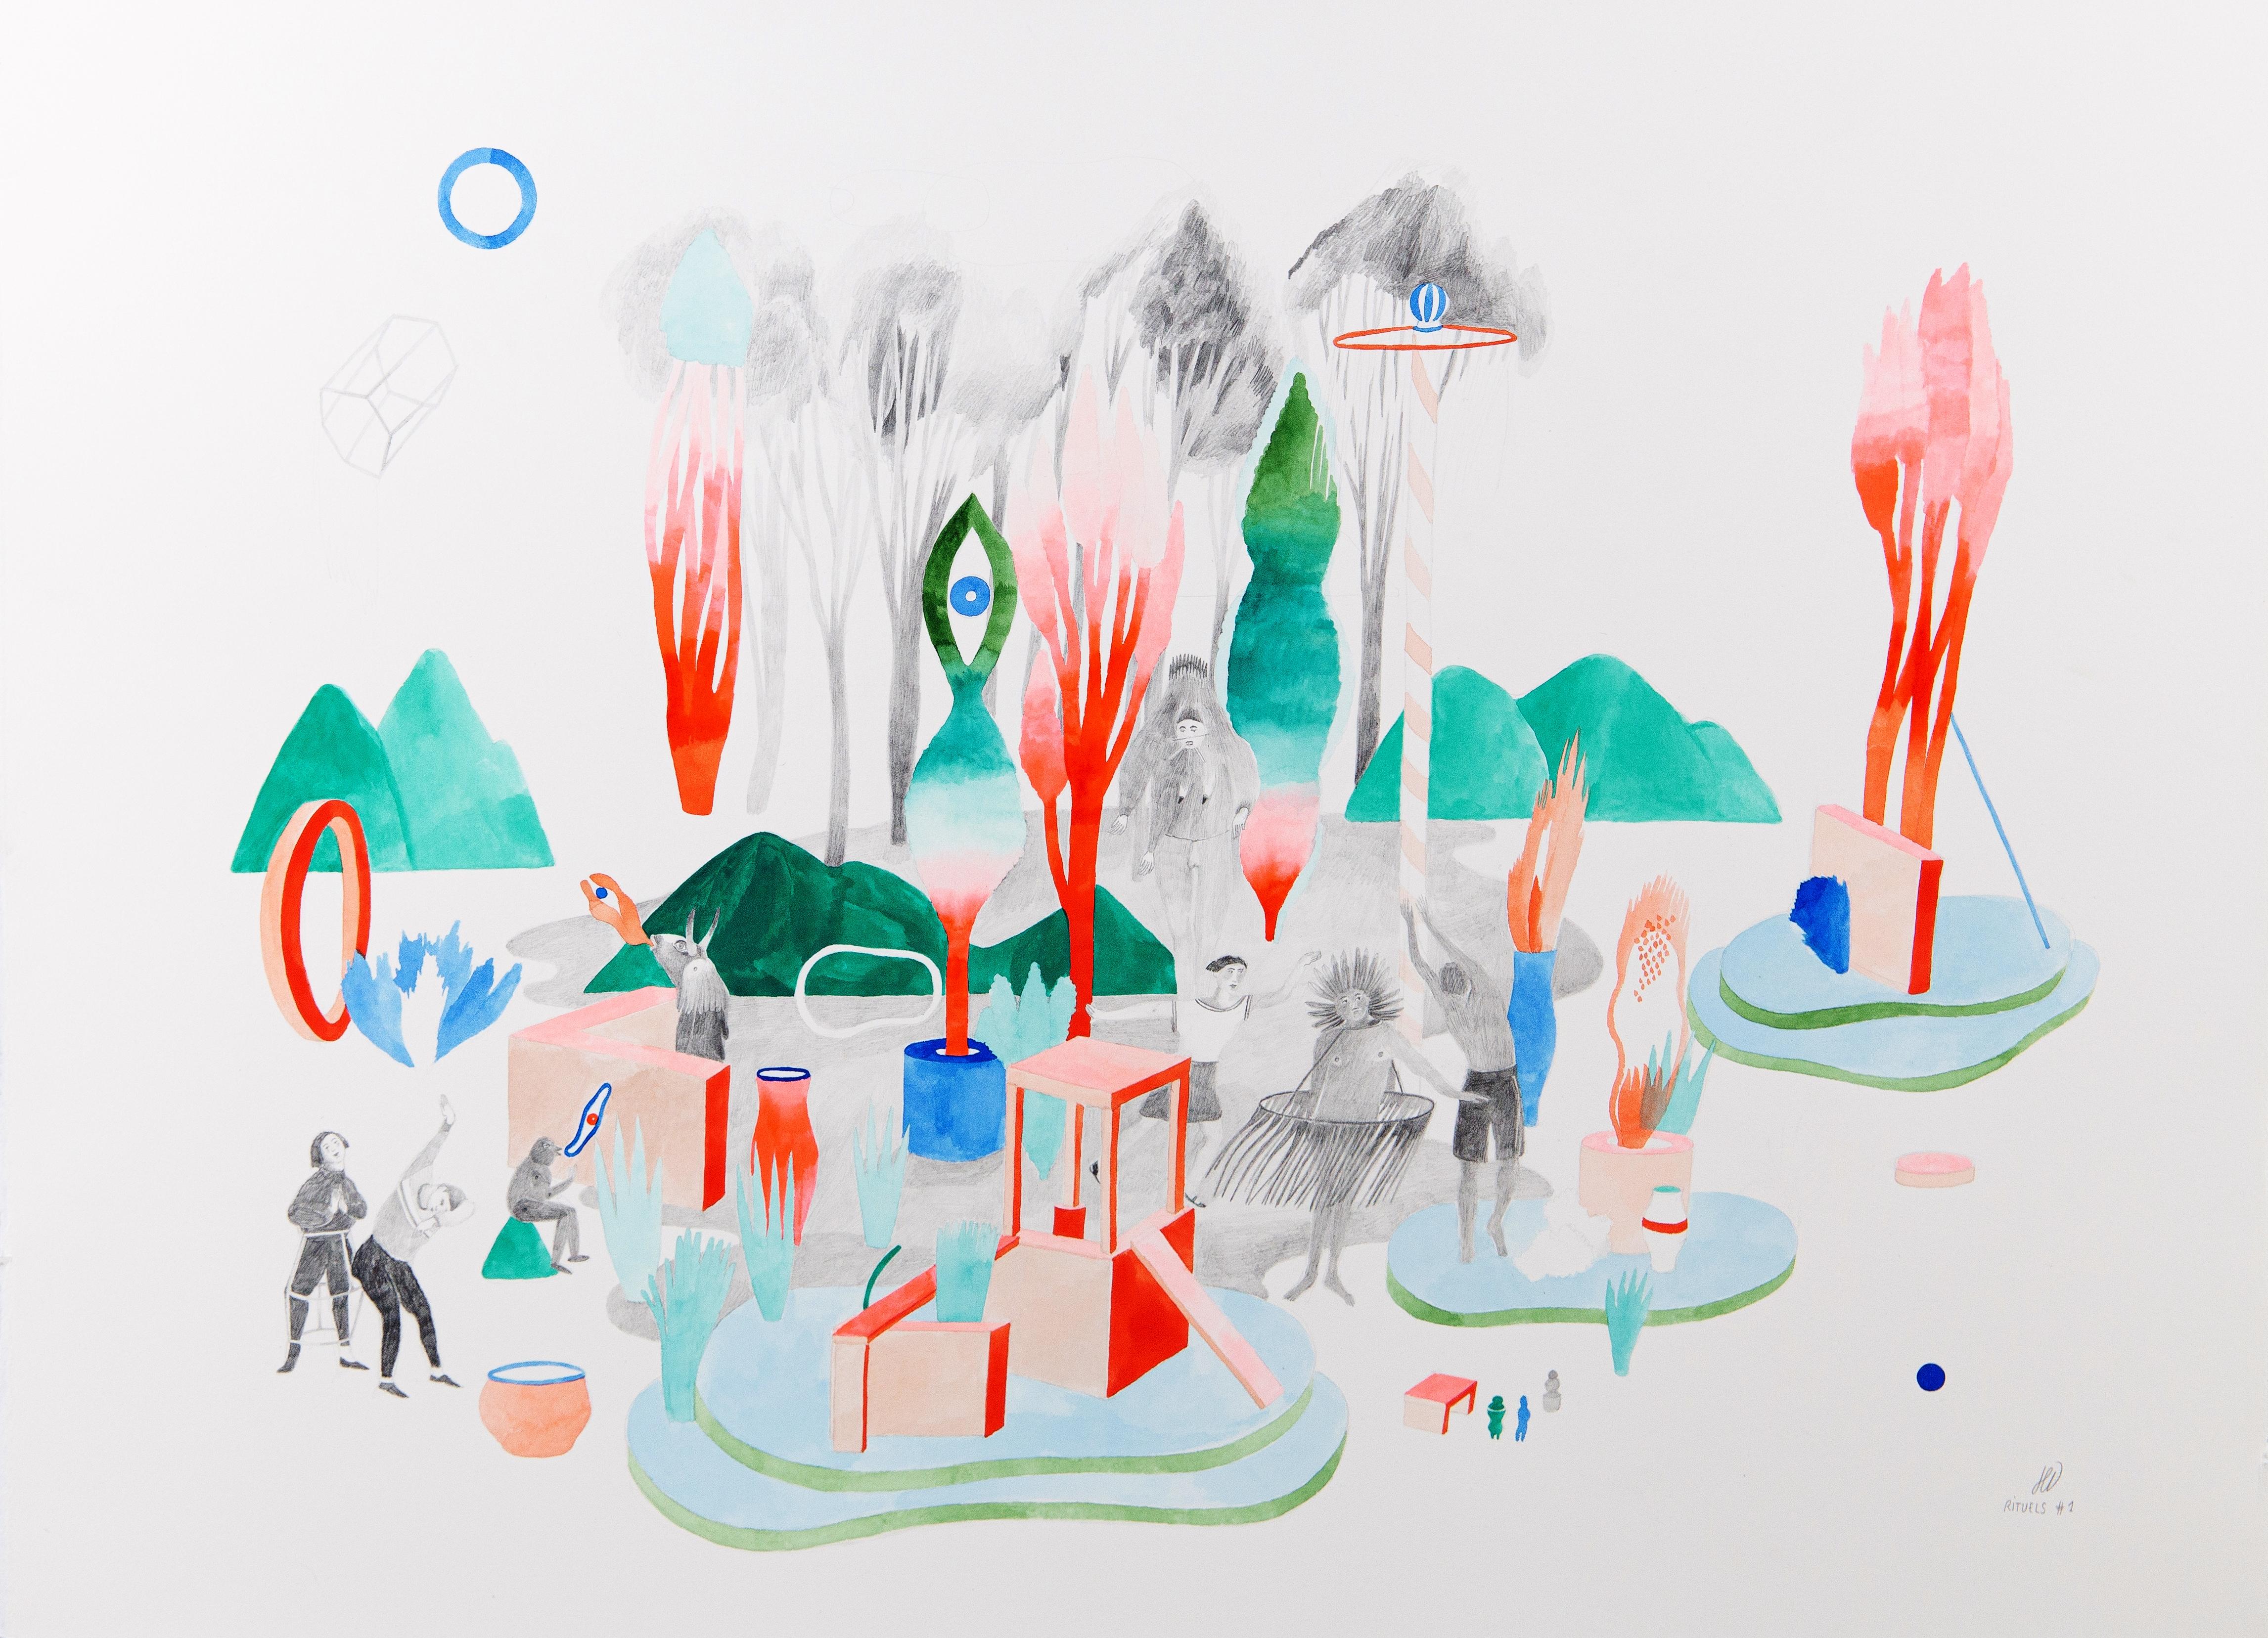 Gouache, Farbstift und Graphit auf Papier
Signiert unten rechts
Einzigartige Arbeit

1 / Hélène DUCLOS, 2016 - Künstlerische Stellungnahme

"Die Frage nach der conditio humana und der Stellung des Lebens - Was bedeutet es, ein Lebewesen zu sein?